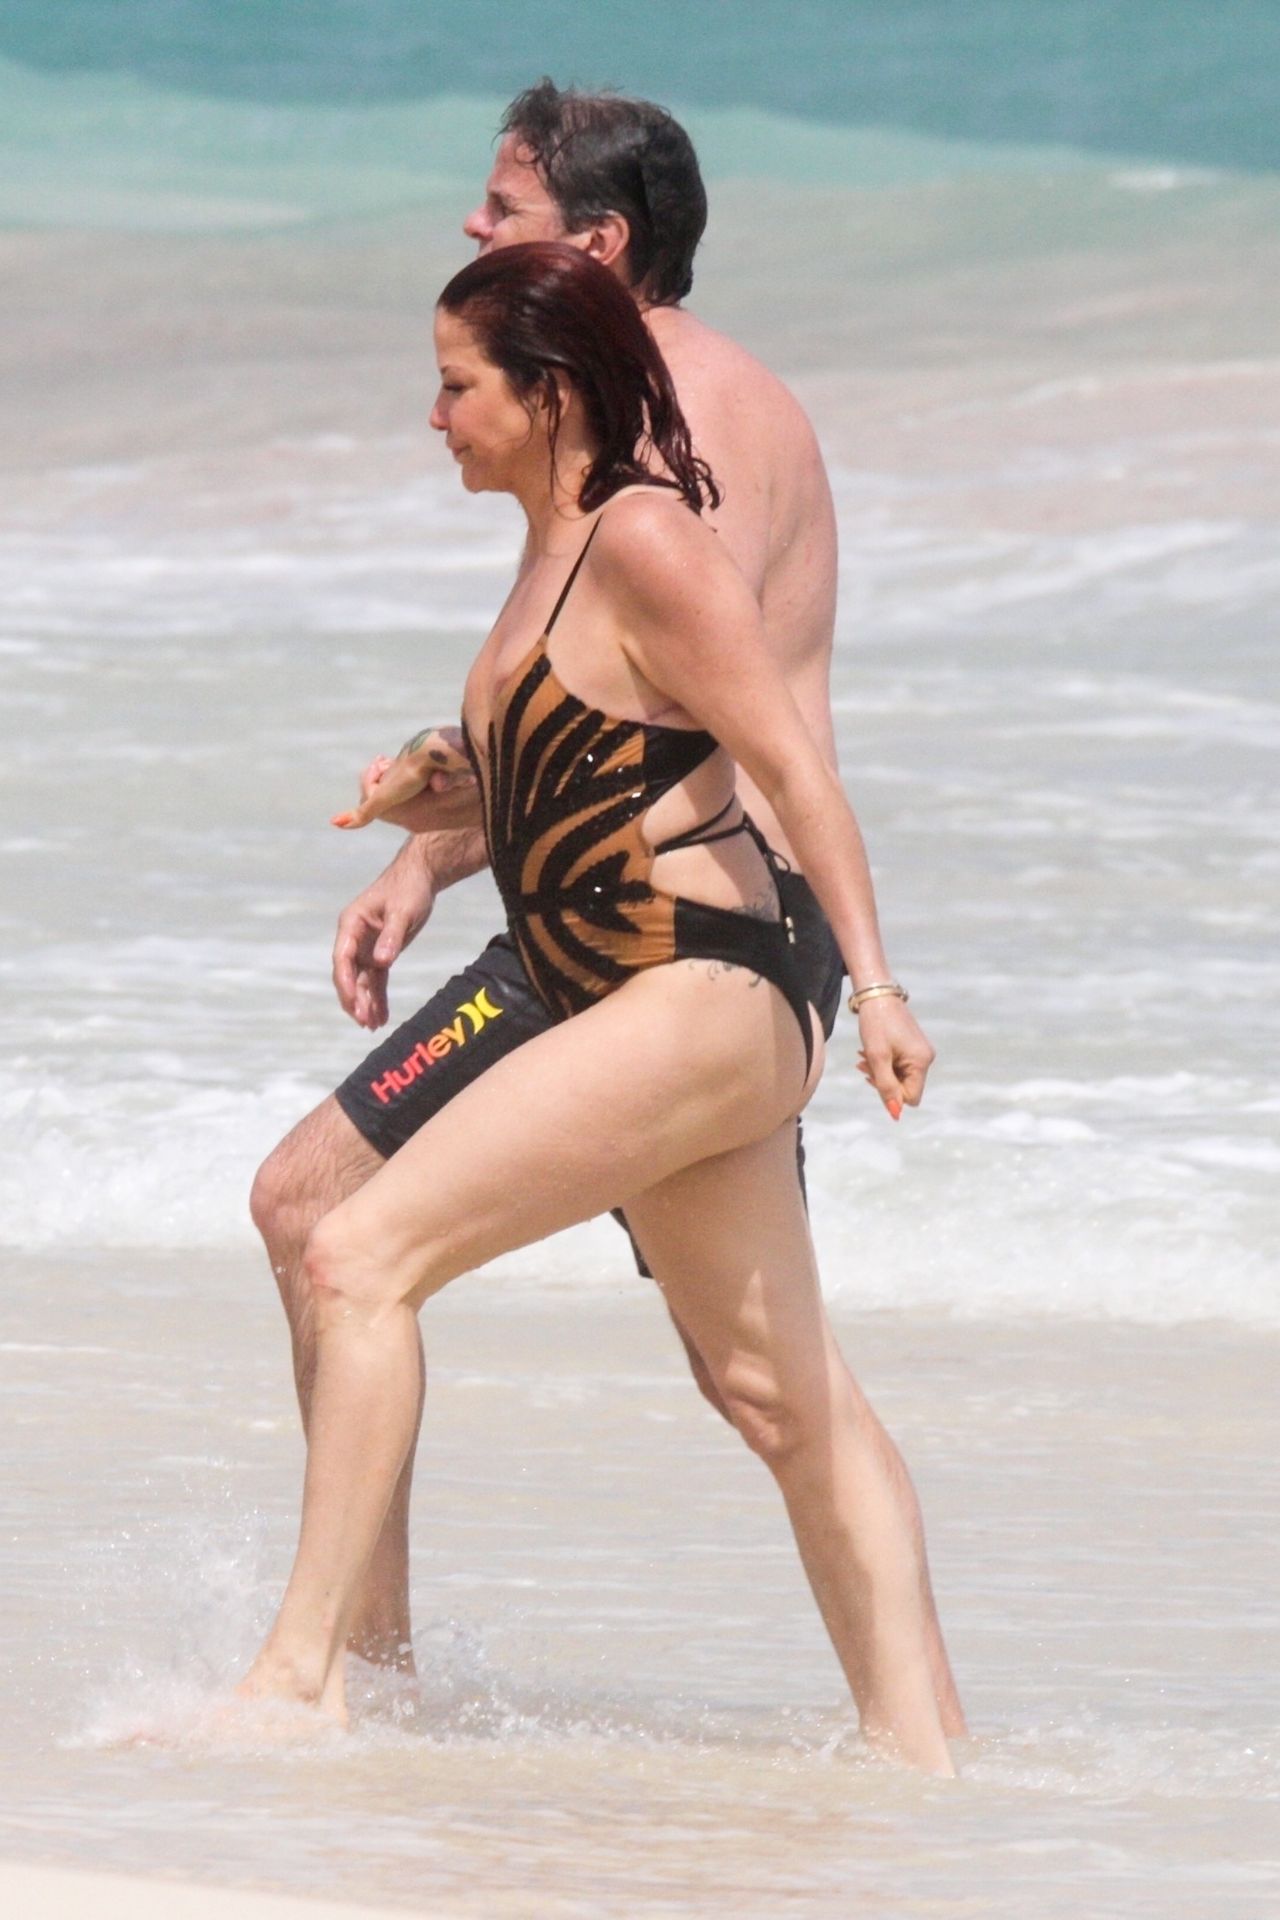 Slashs Ex-Wife Perla Ferrar is Living Life on the Beach (32 Photos)